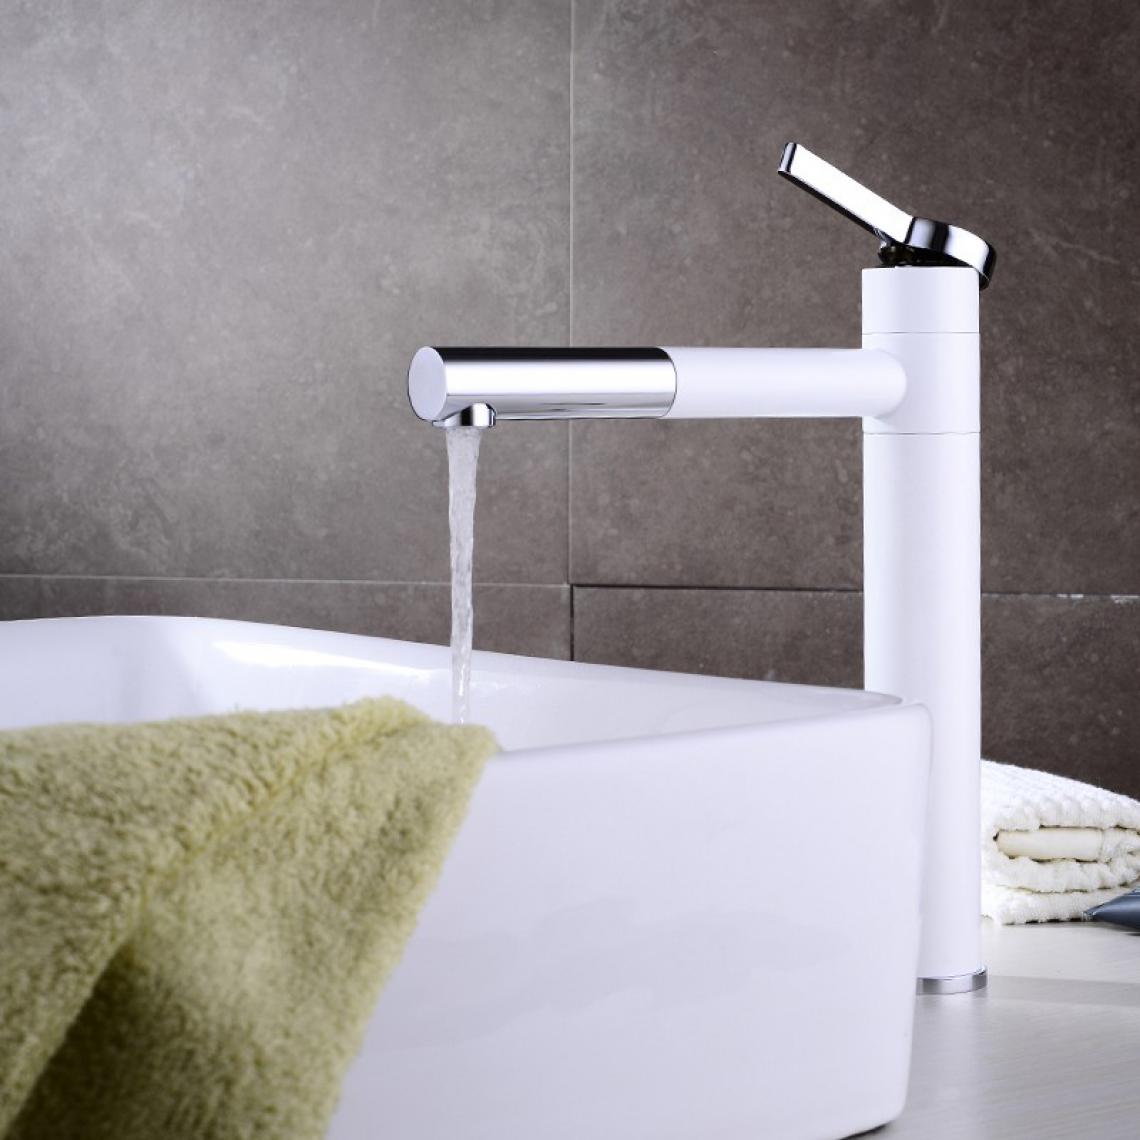 Kroos - Robinet lavabo surélevé moderne blanc - Robinet de lavabo